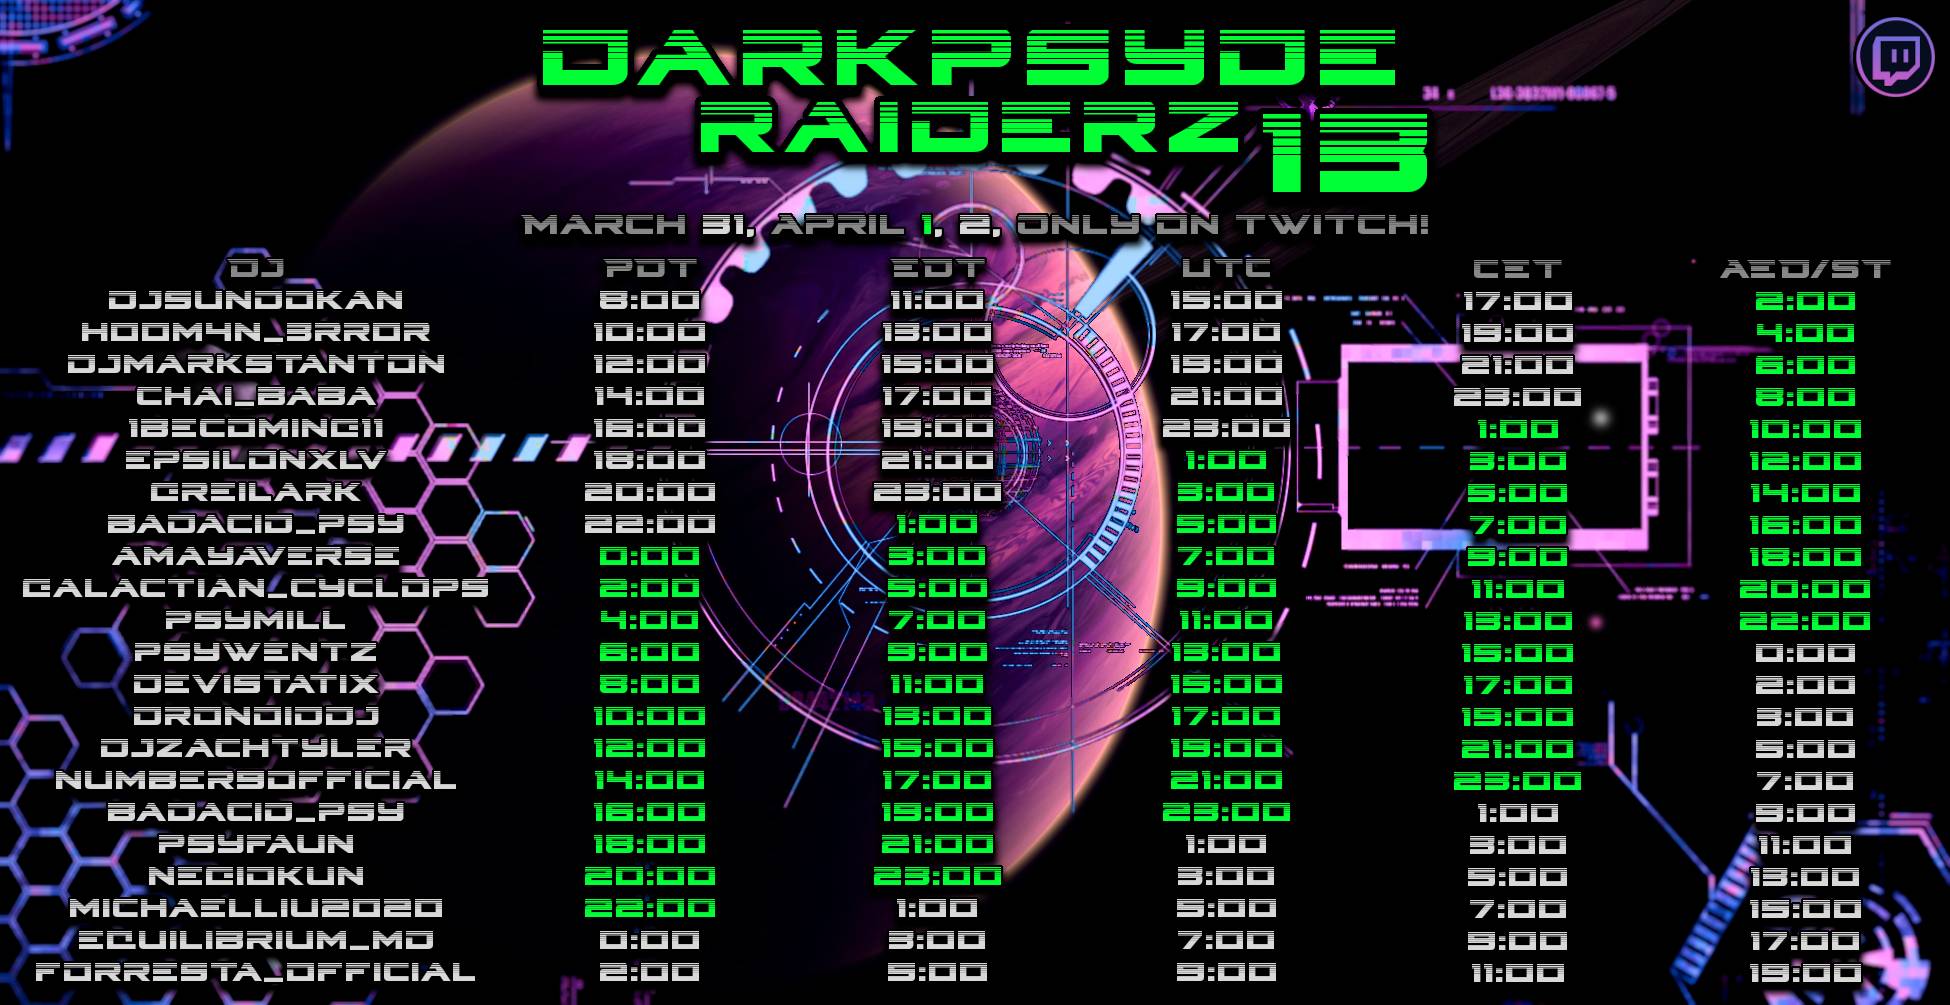 Darkpsyde Raiderz 13